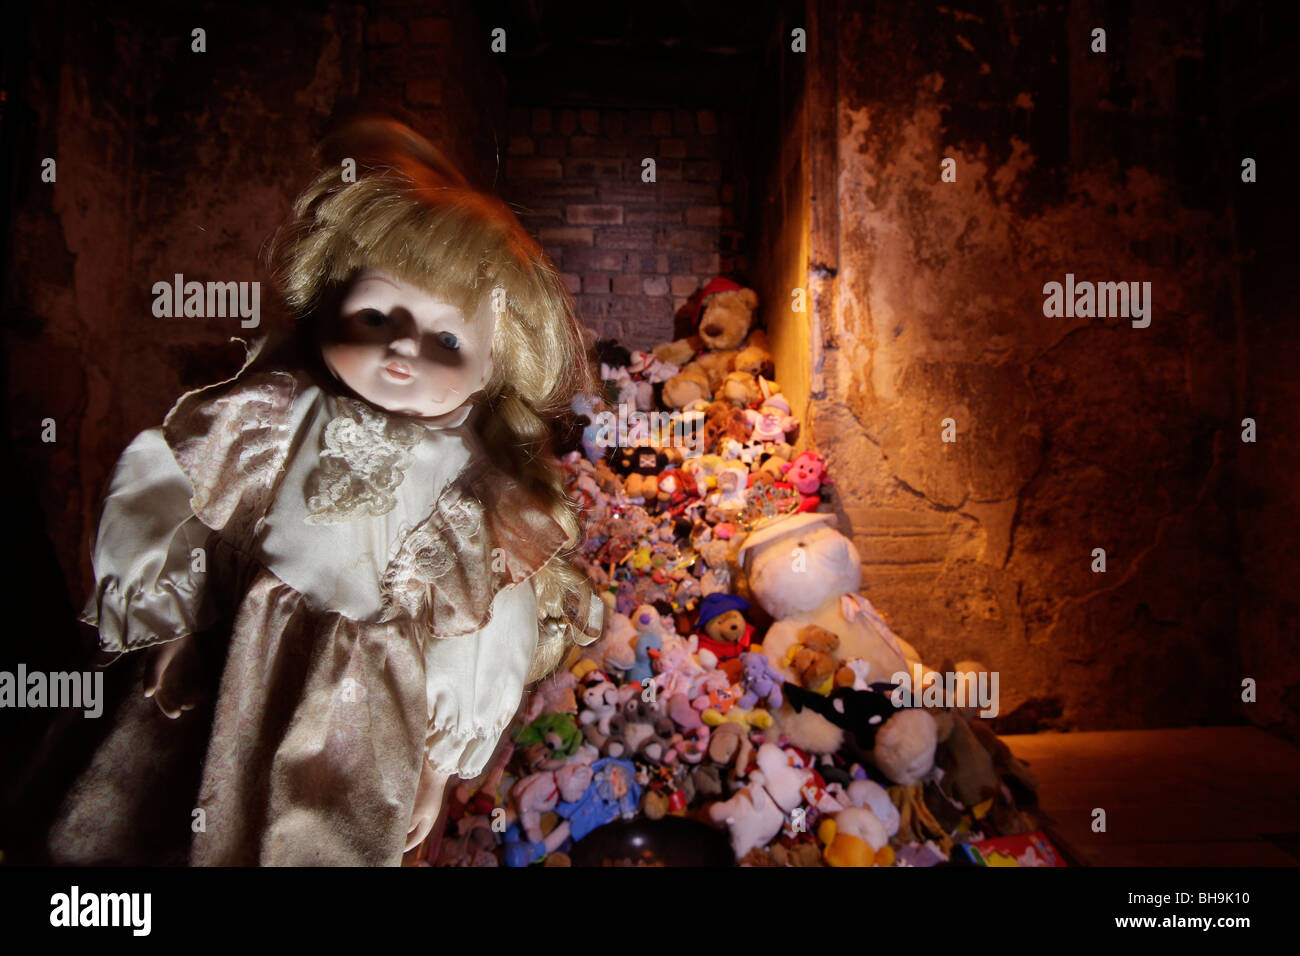 La poupée de l'enfant dans le sanctuaire du vrai Mary King's Close, Édimbourg Banque D'Images